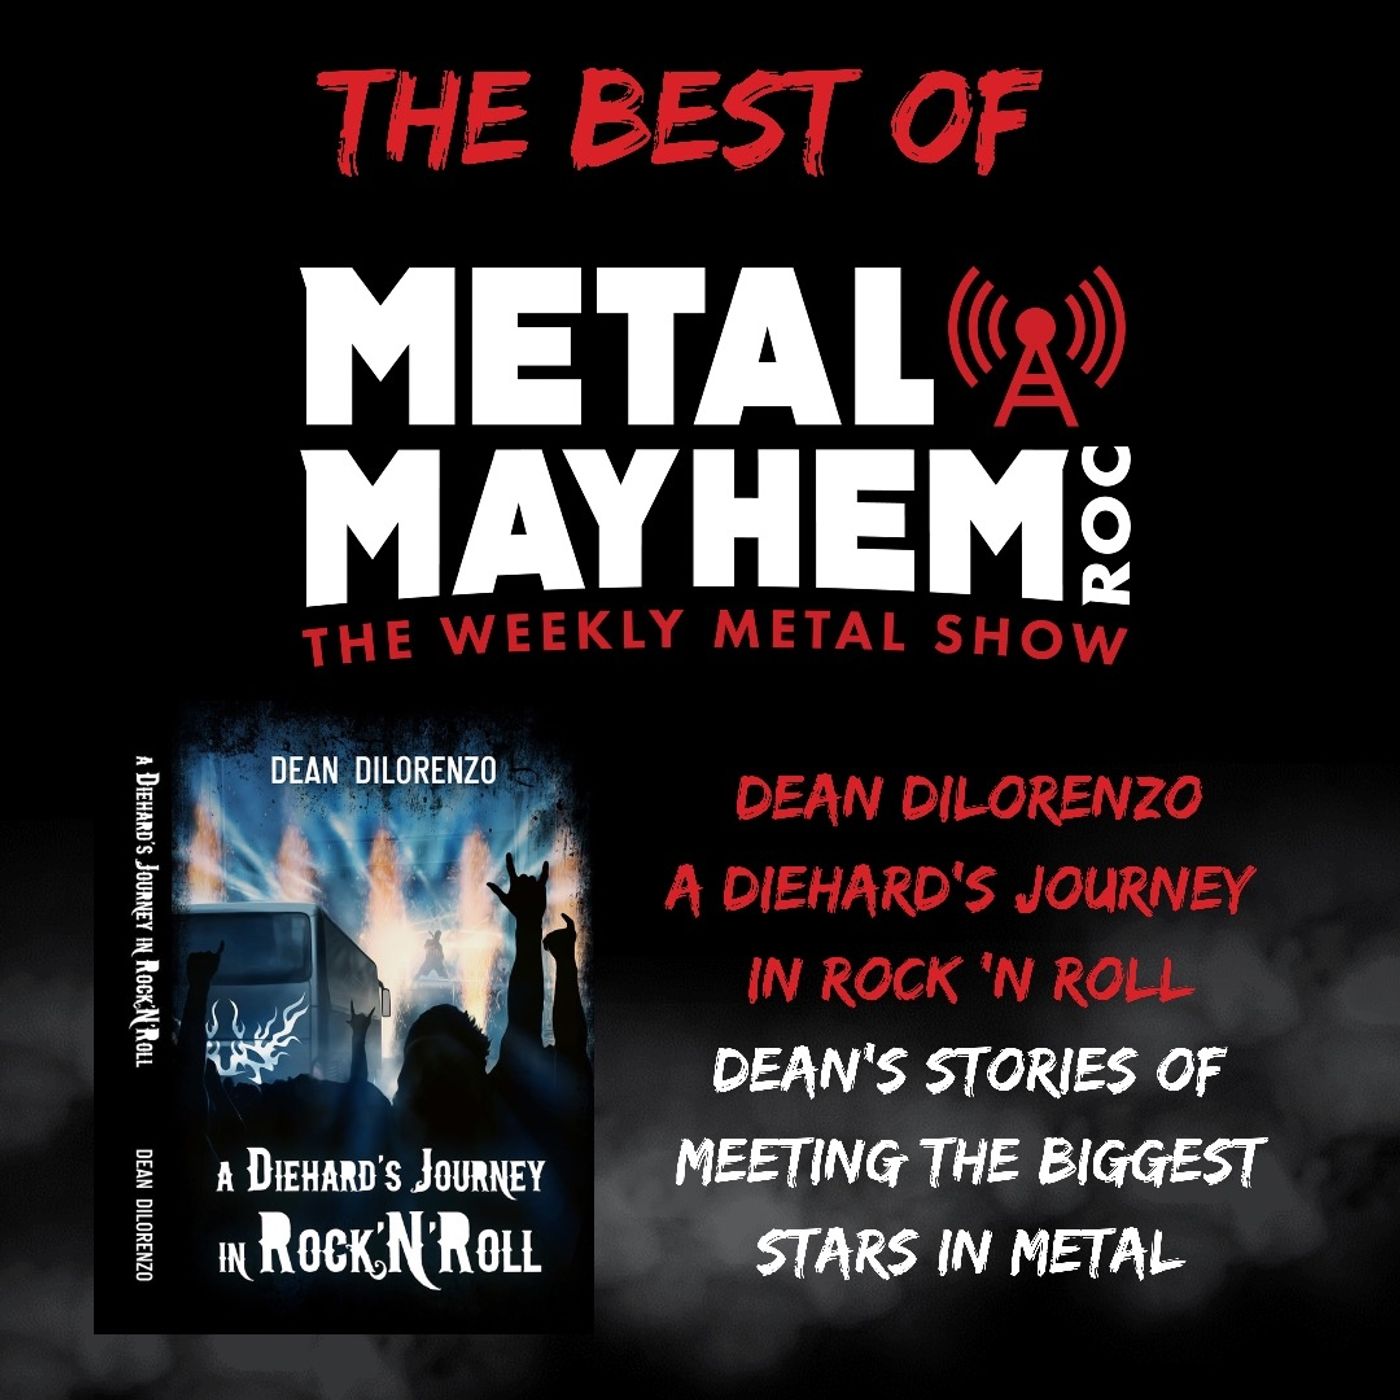 Best Of Metal Mayhem ROC- “A Diehards Journey in Rock n Roll.” Dean Dilorenzo and his story of meeting the biggest stars in Rock n Metal